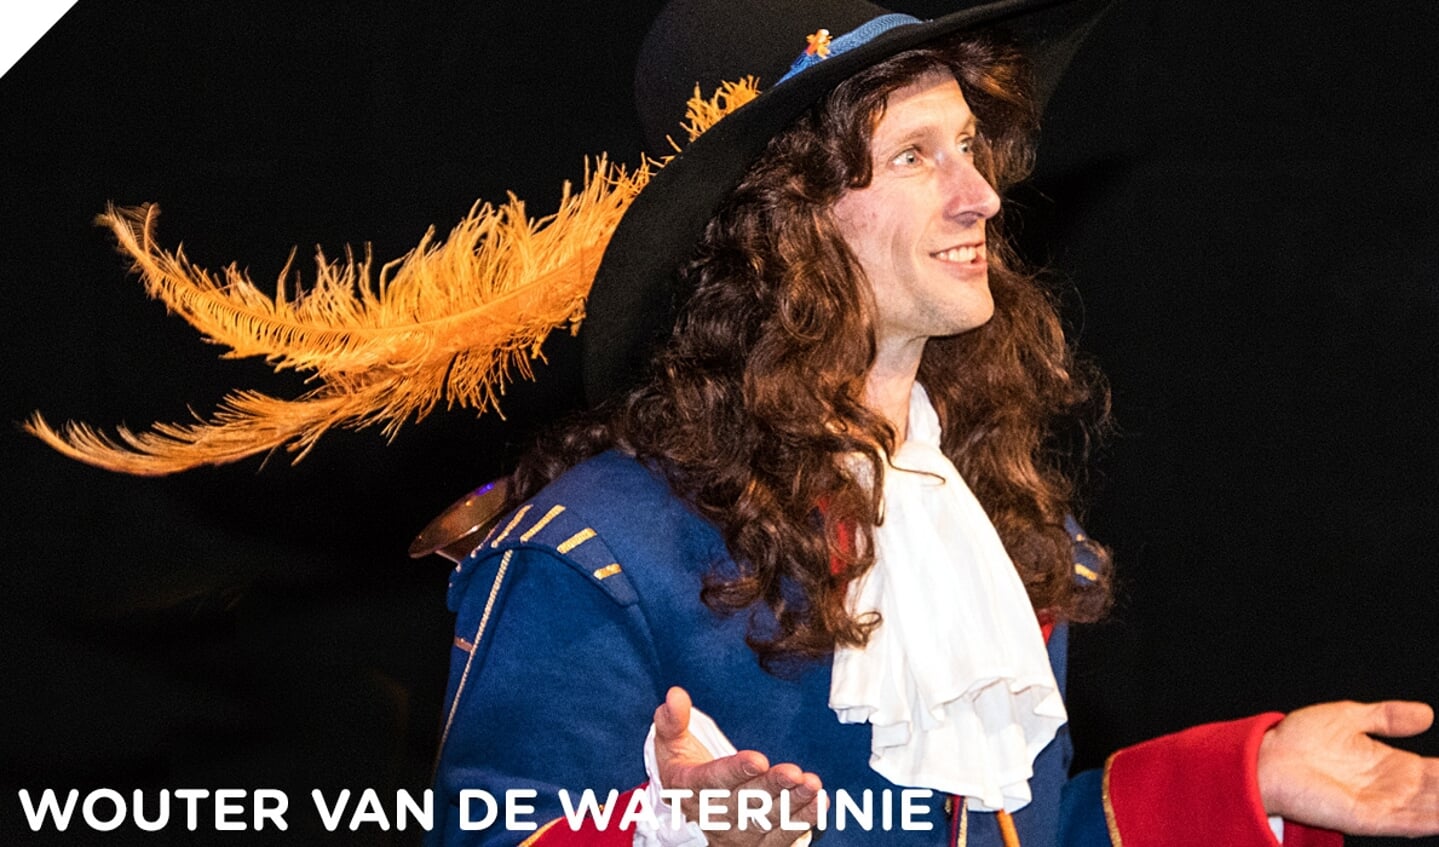 Wouter van de Waterlinie is de fictieve trompetter van prins Willem III.